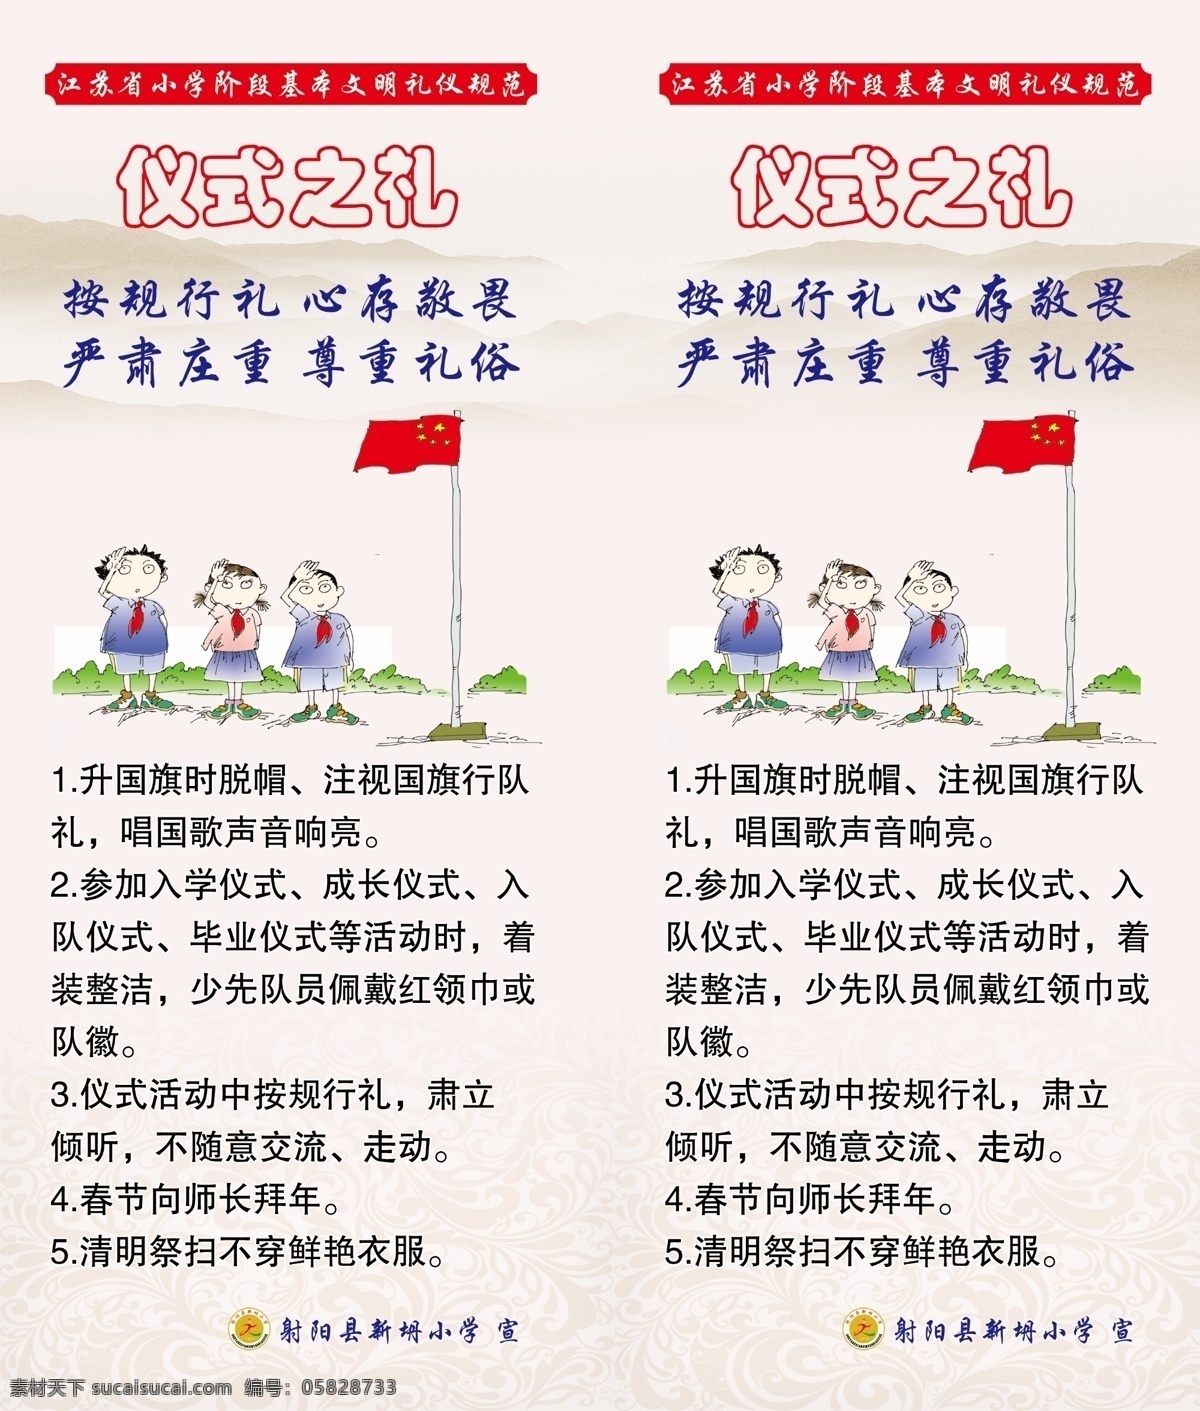 江苏省 文明 礼仪 规范 仪式之礼 八礼四仪 校园文化